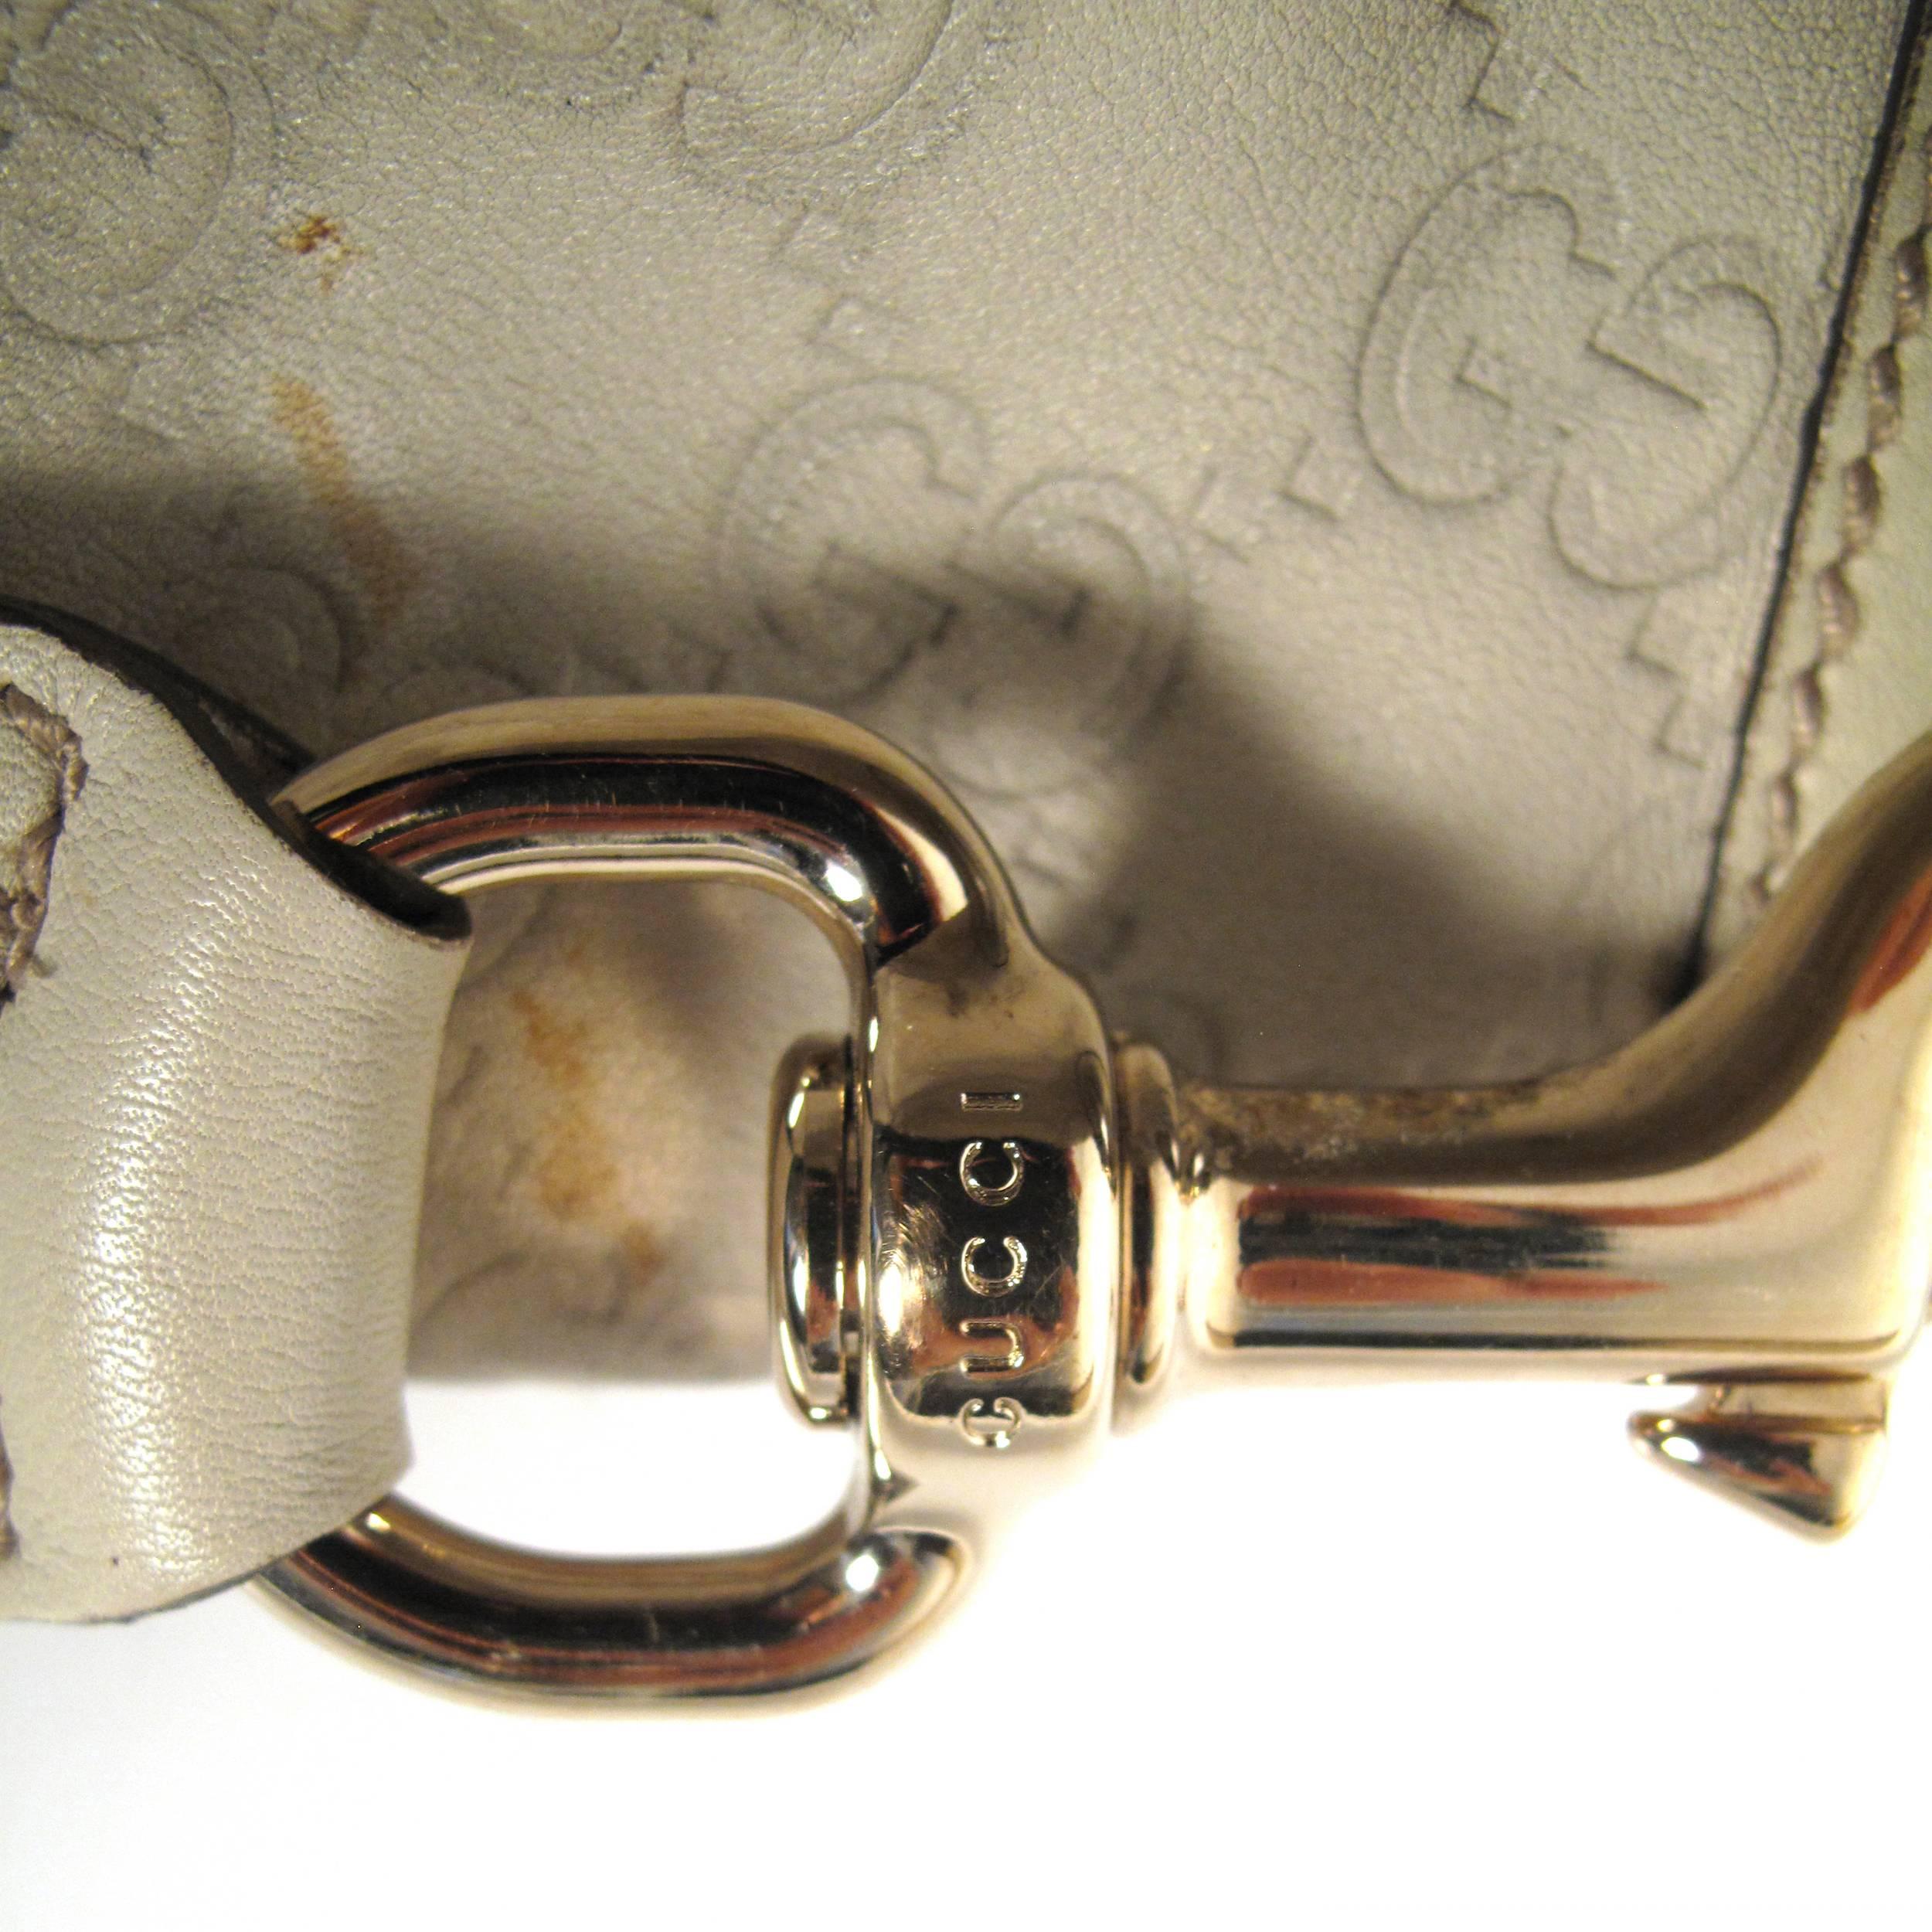 Gucci Bamboo Leather Monogram Shoulder Bag - Tan Beige GG Gold Satchel Handbag 1